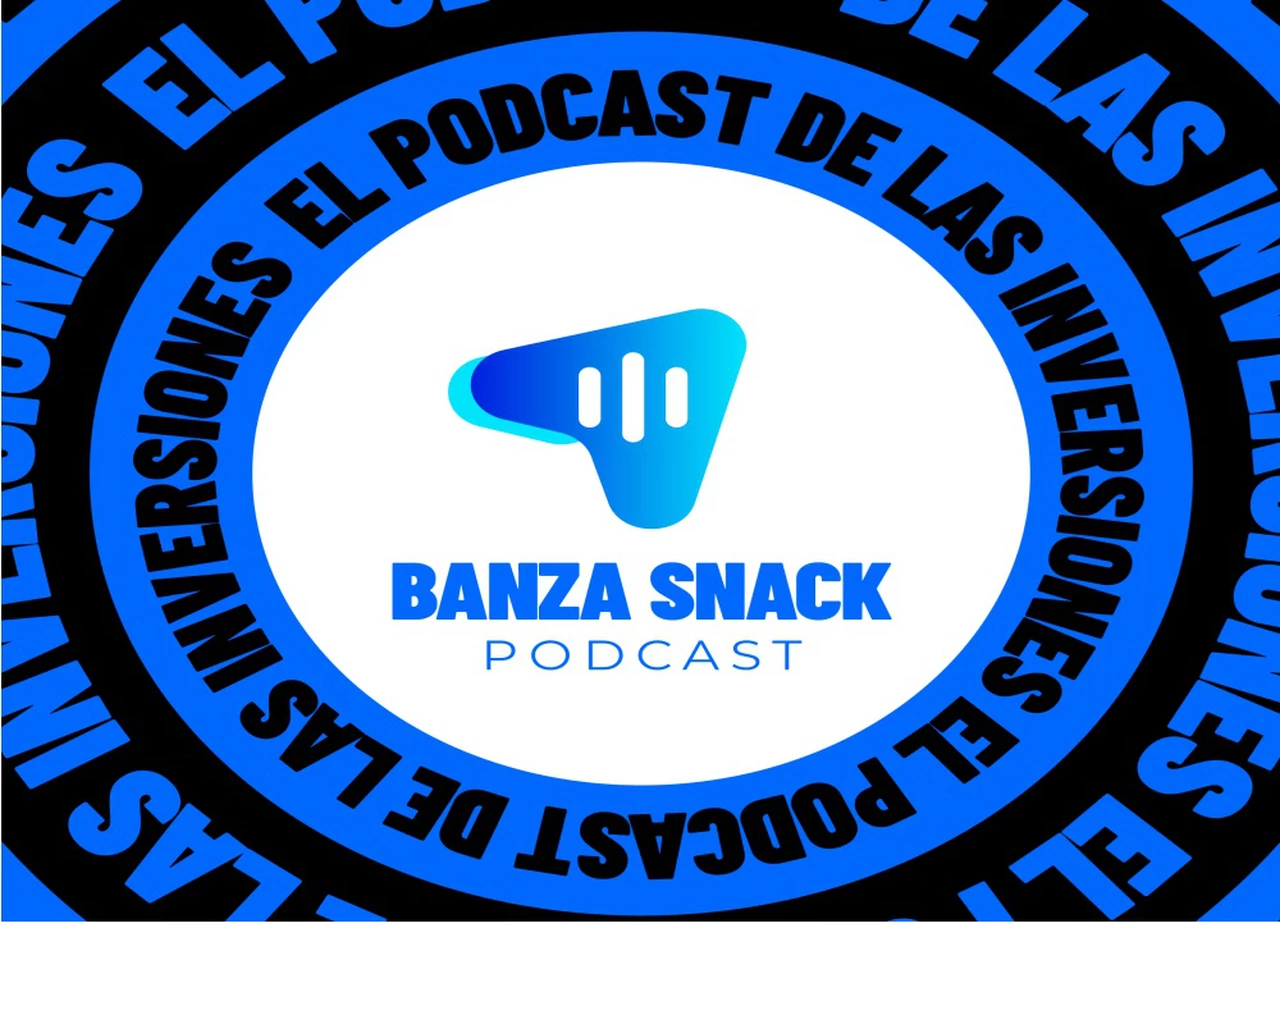 Banza presenta su podcast sobre finanzas e inversiones